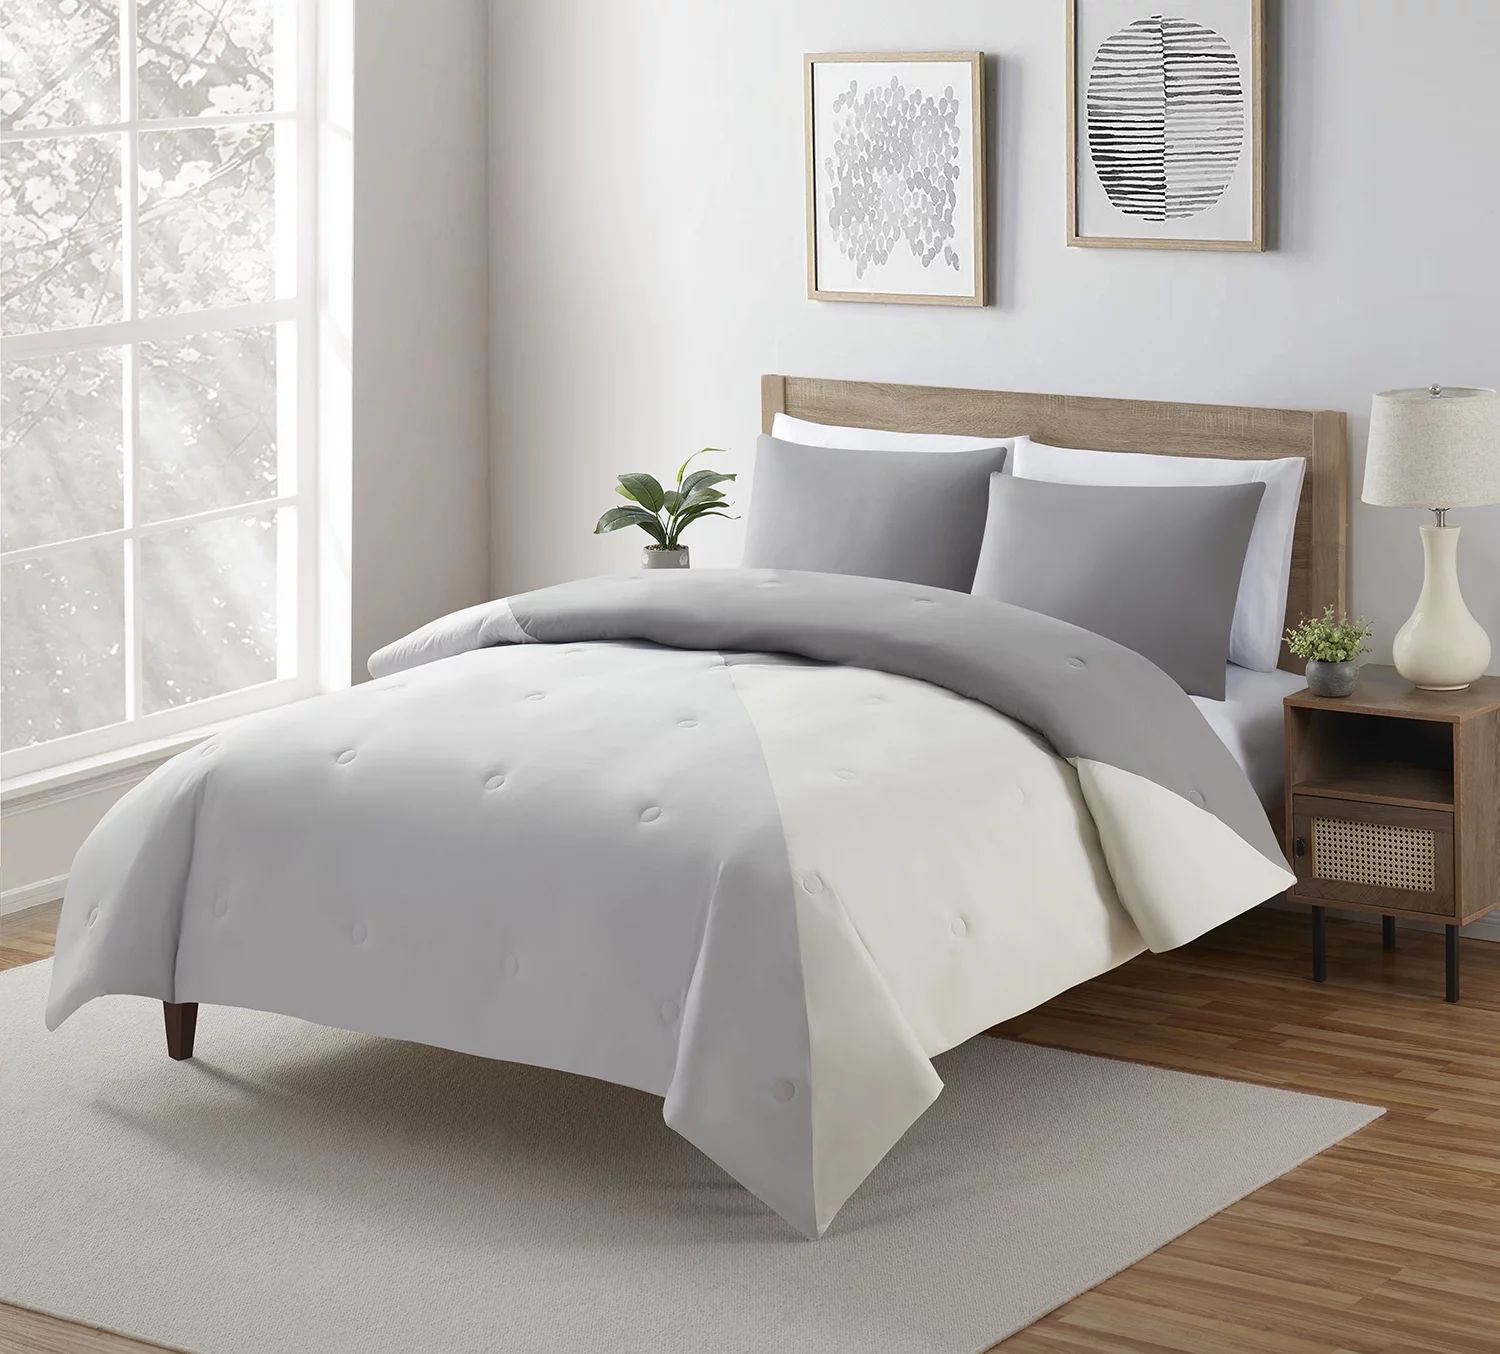 Serta So Soft 3-Piece Grey Reversible Comforter Set, Full/Queen - Walmart.com | Walmart (US)